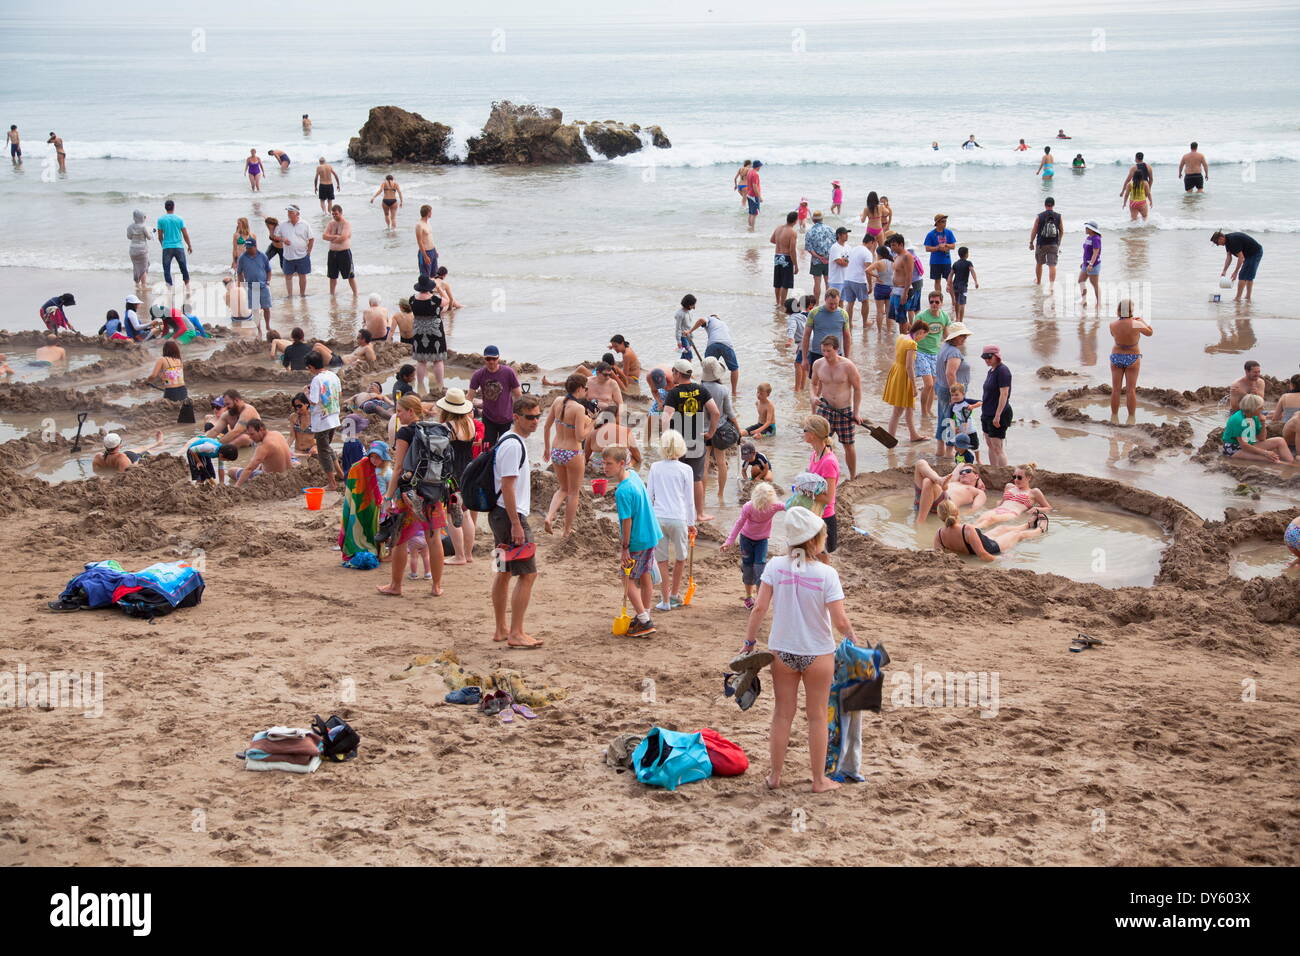 Les personnes à l'eau chaude, la plage de Hahei, péninsule de Coromandel, Waikato, île du Nord, Nouvelle-Zélande, Pacifique Banque D'Images